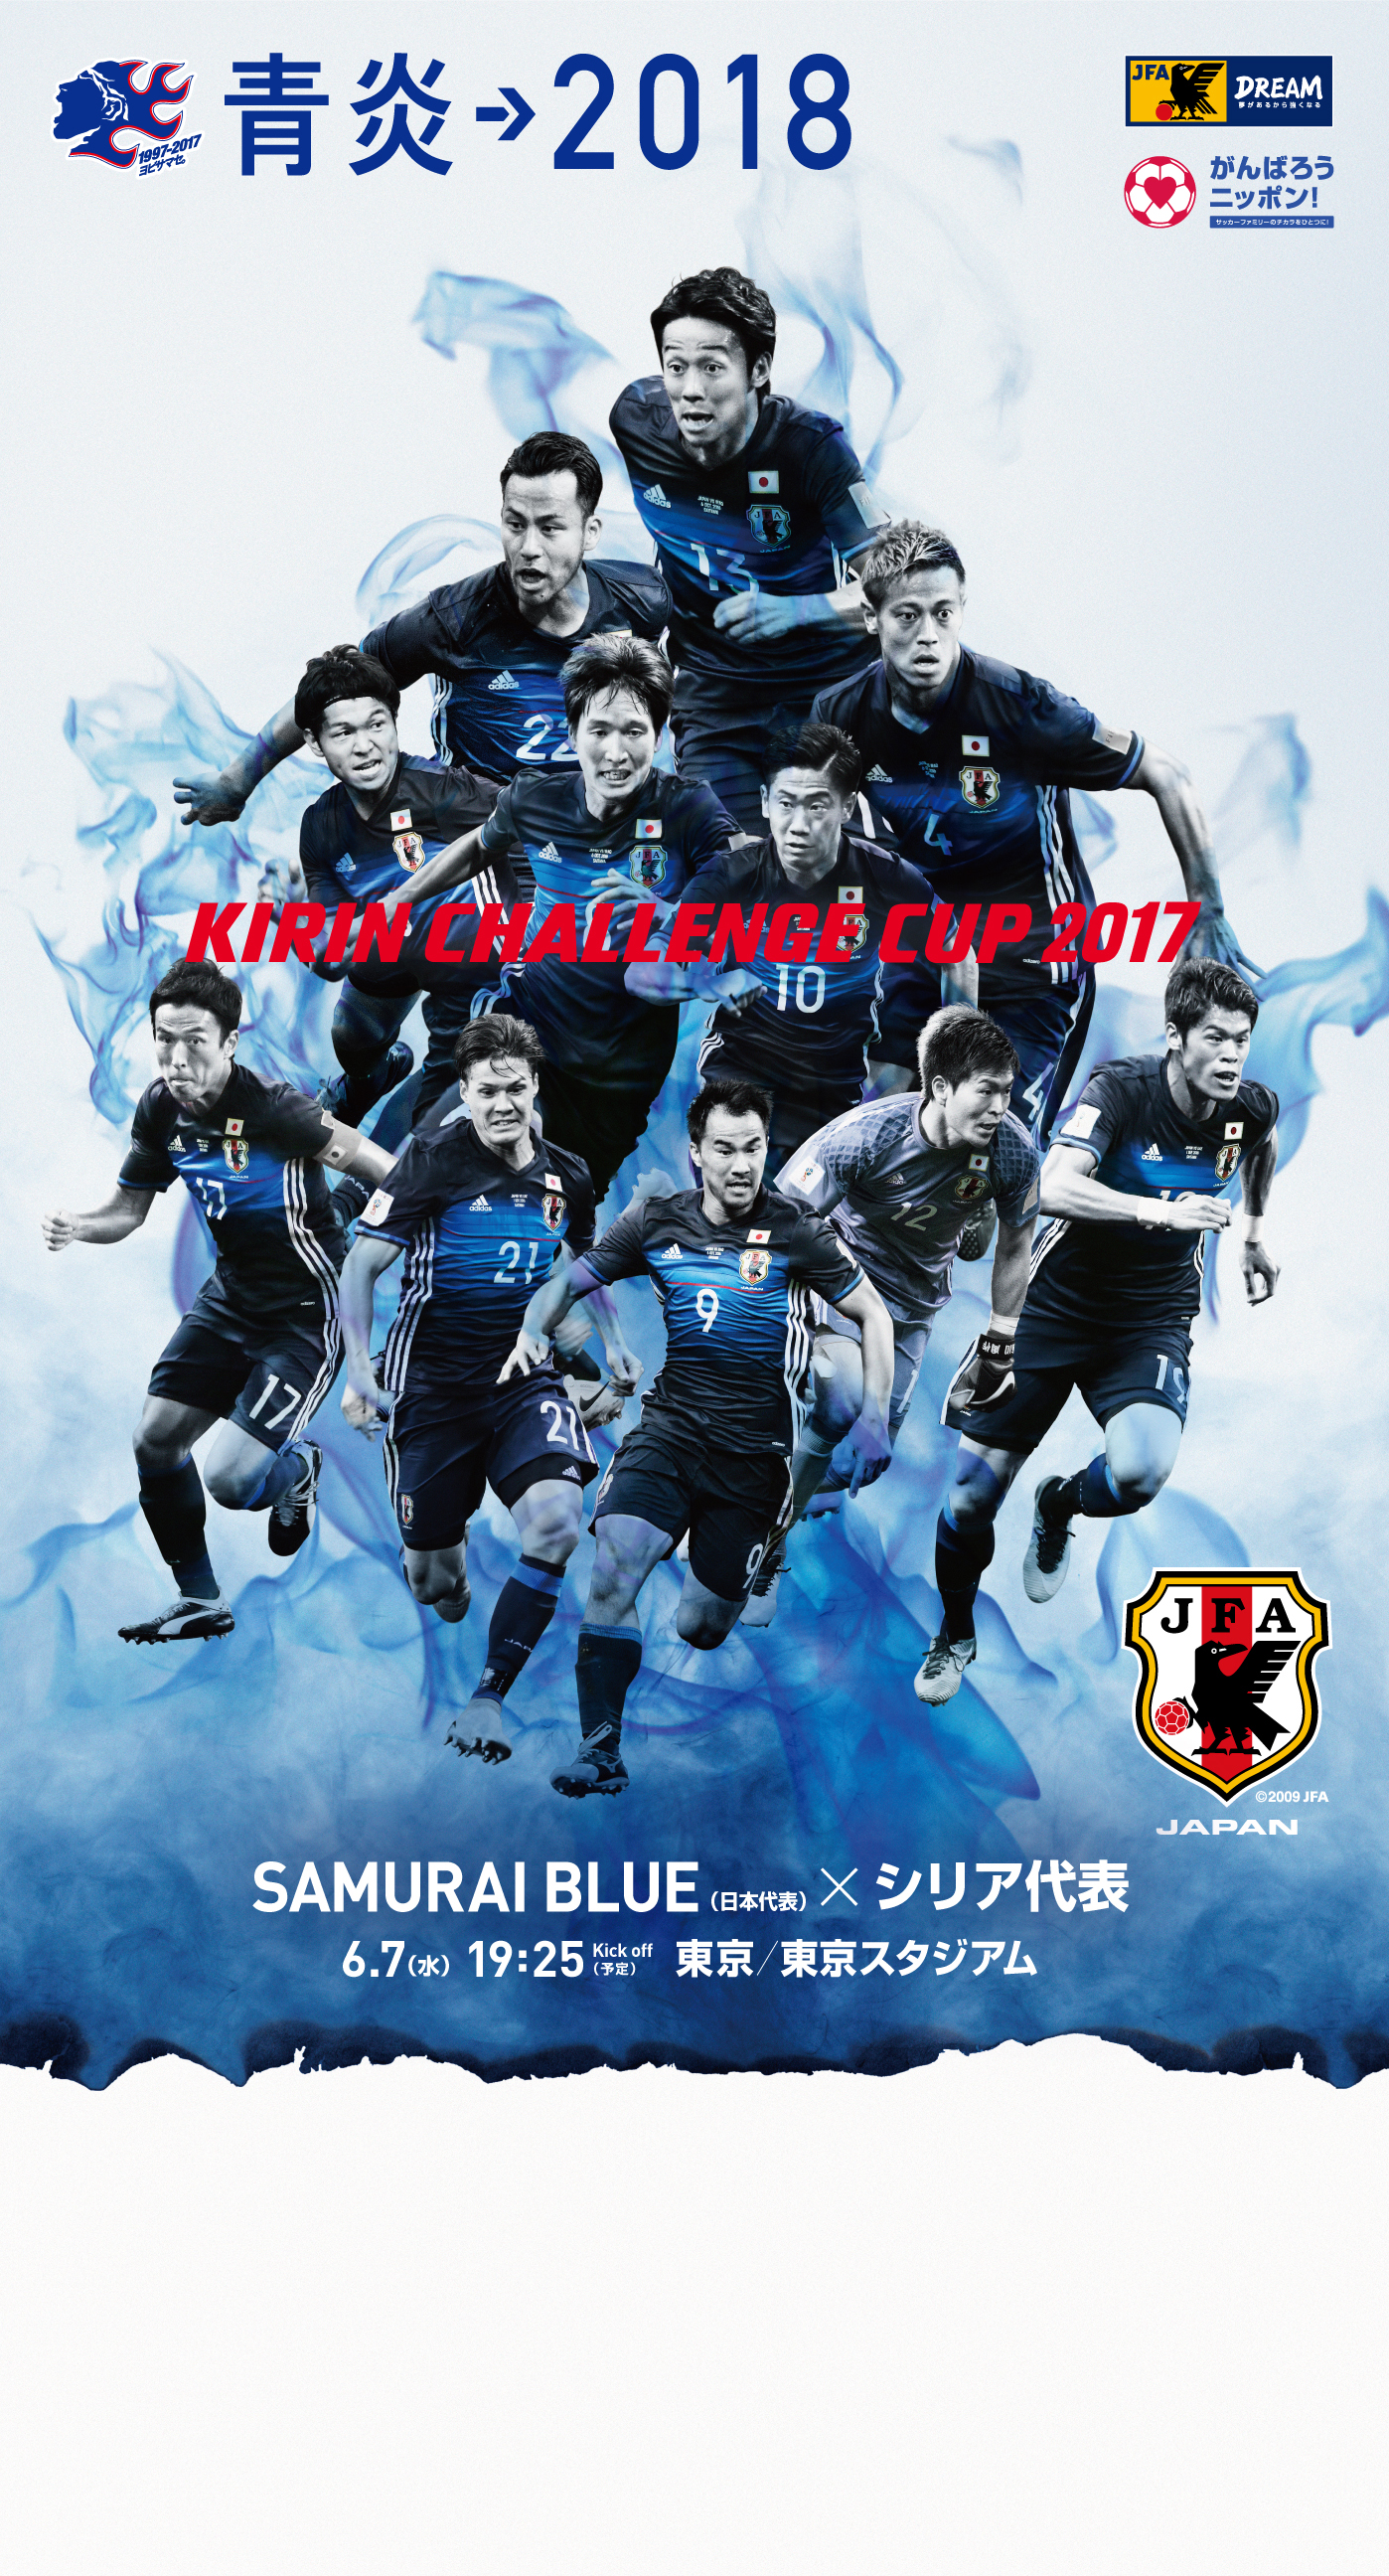 壁紙 ポスターダウンロード キリンチャレンジカップ17 6 7 Samurai Blue 日本代表 Jfa 日本サッカー協会